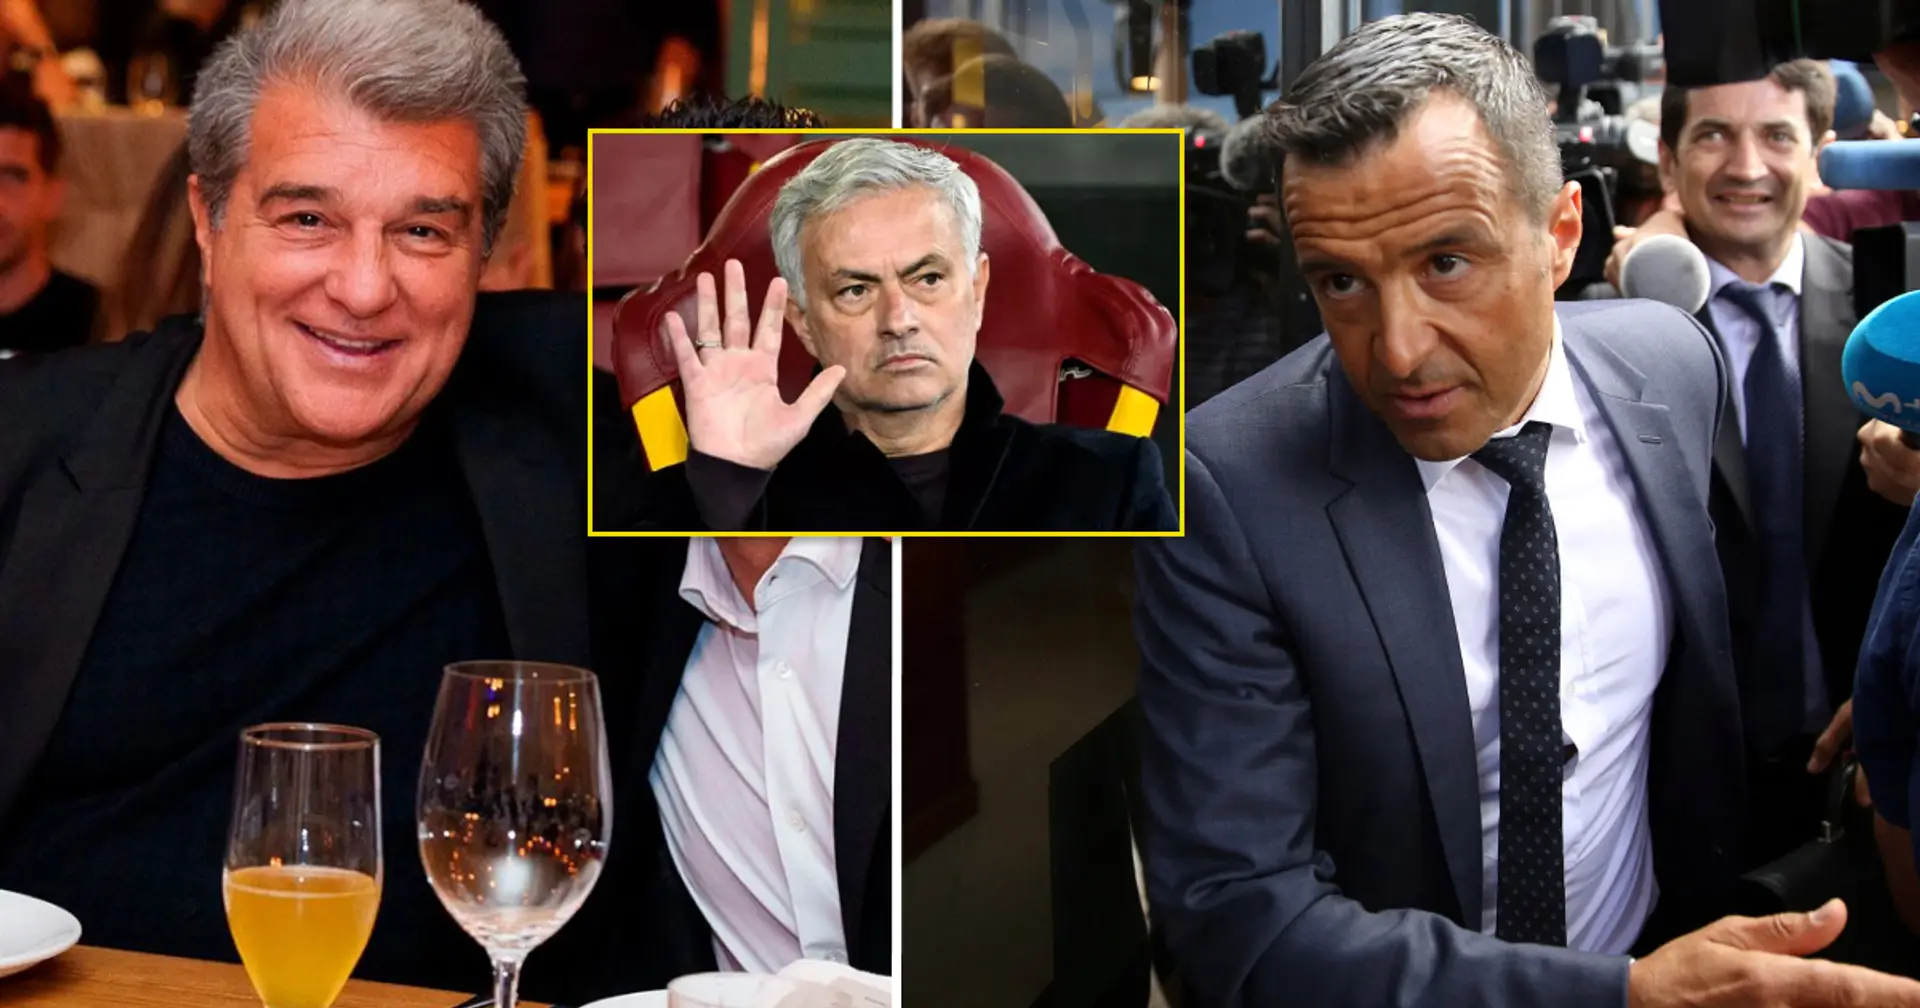 Le président Laporta rencontre le super agent Jorge Mendes à Barcelone – 3 joueurs et 2 entraîneurs éventuellement discutés